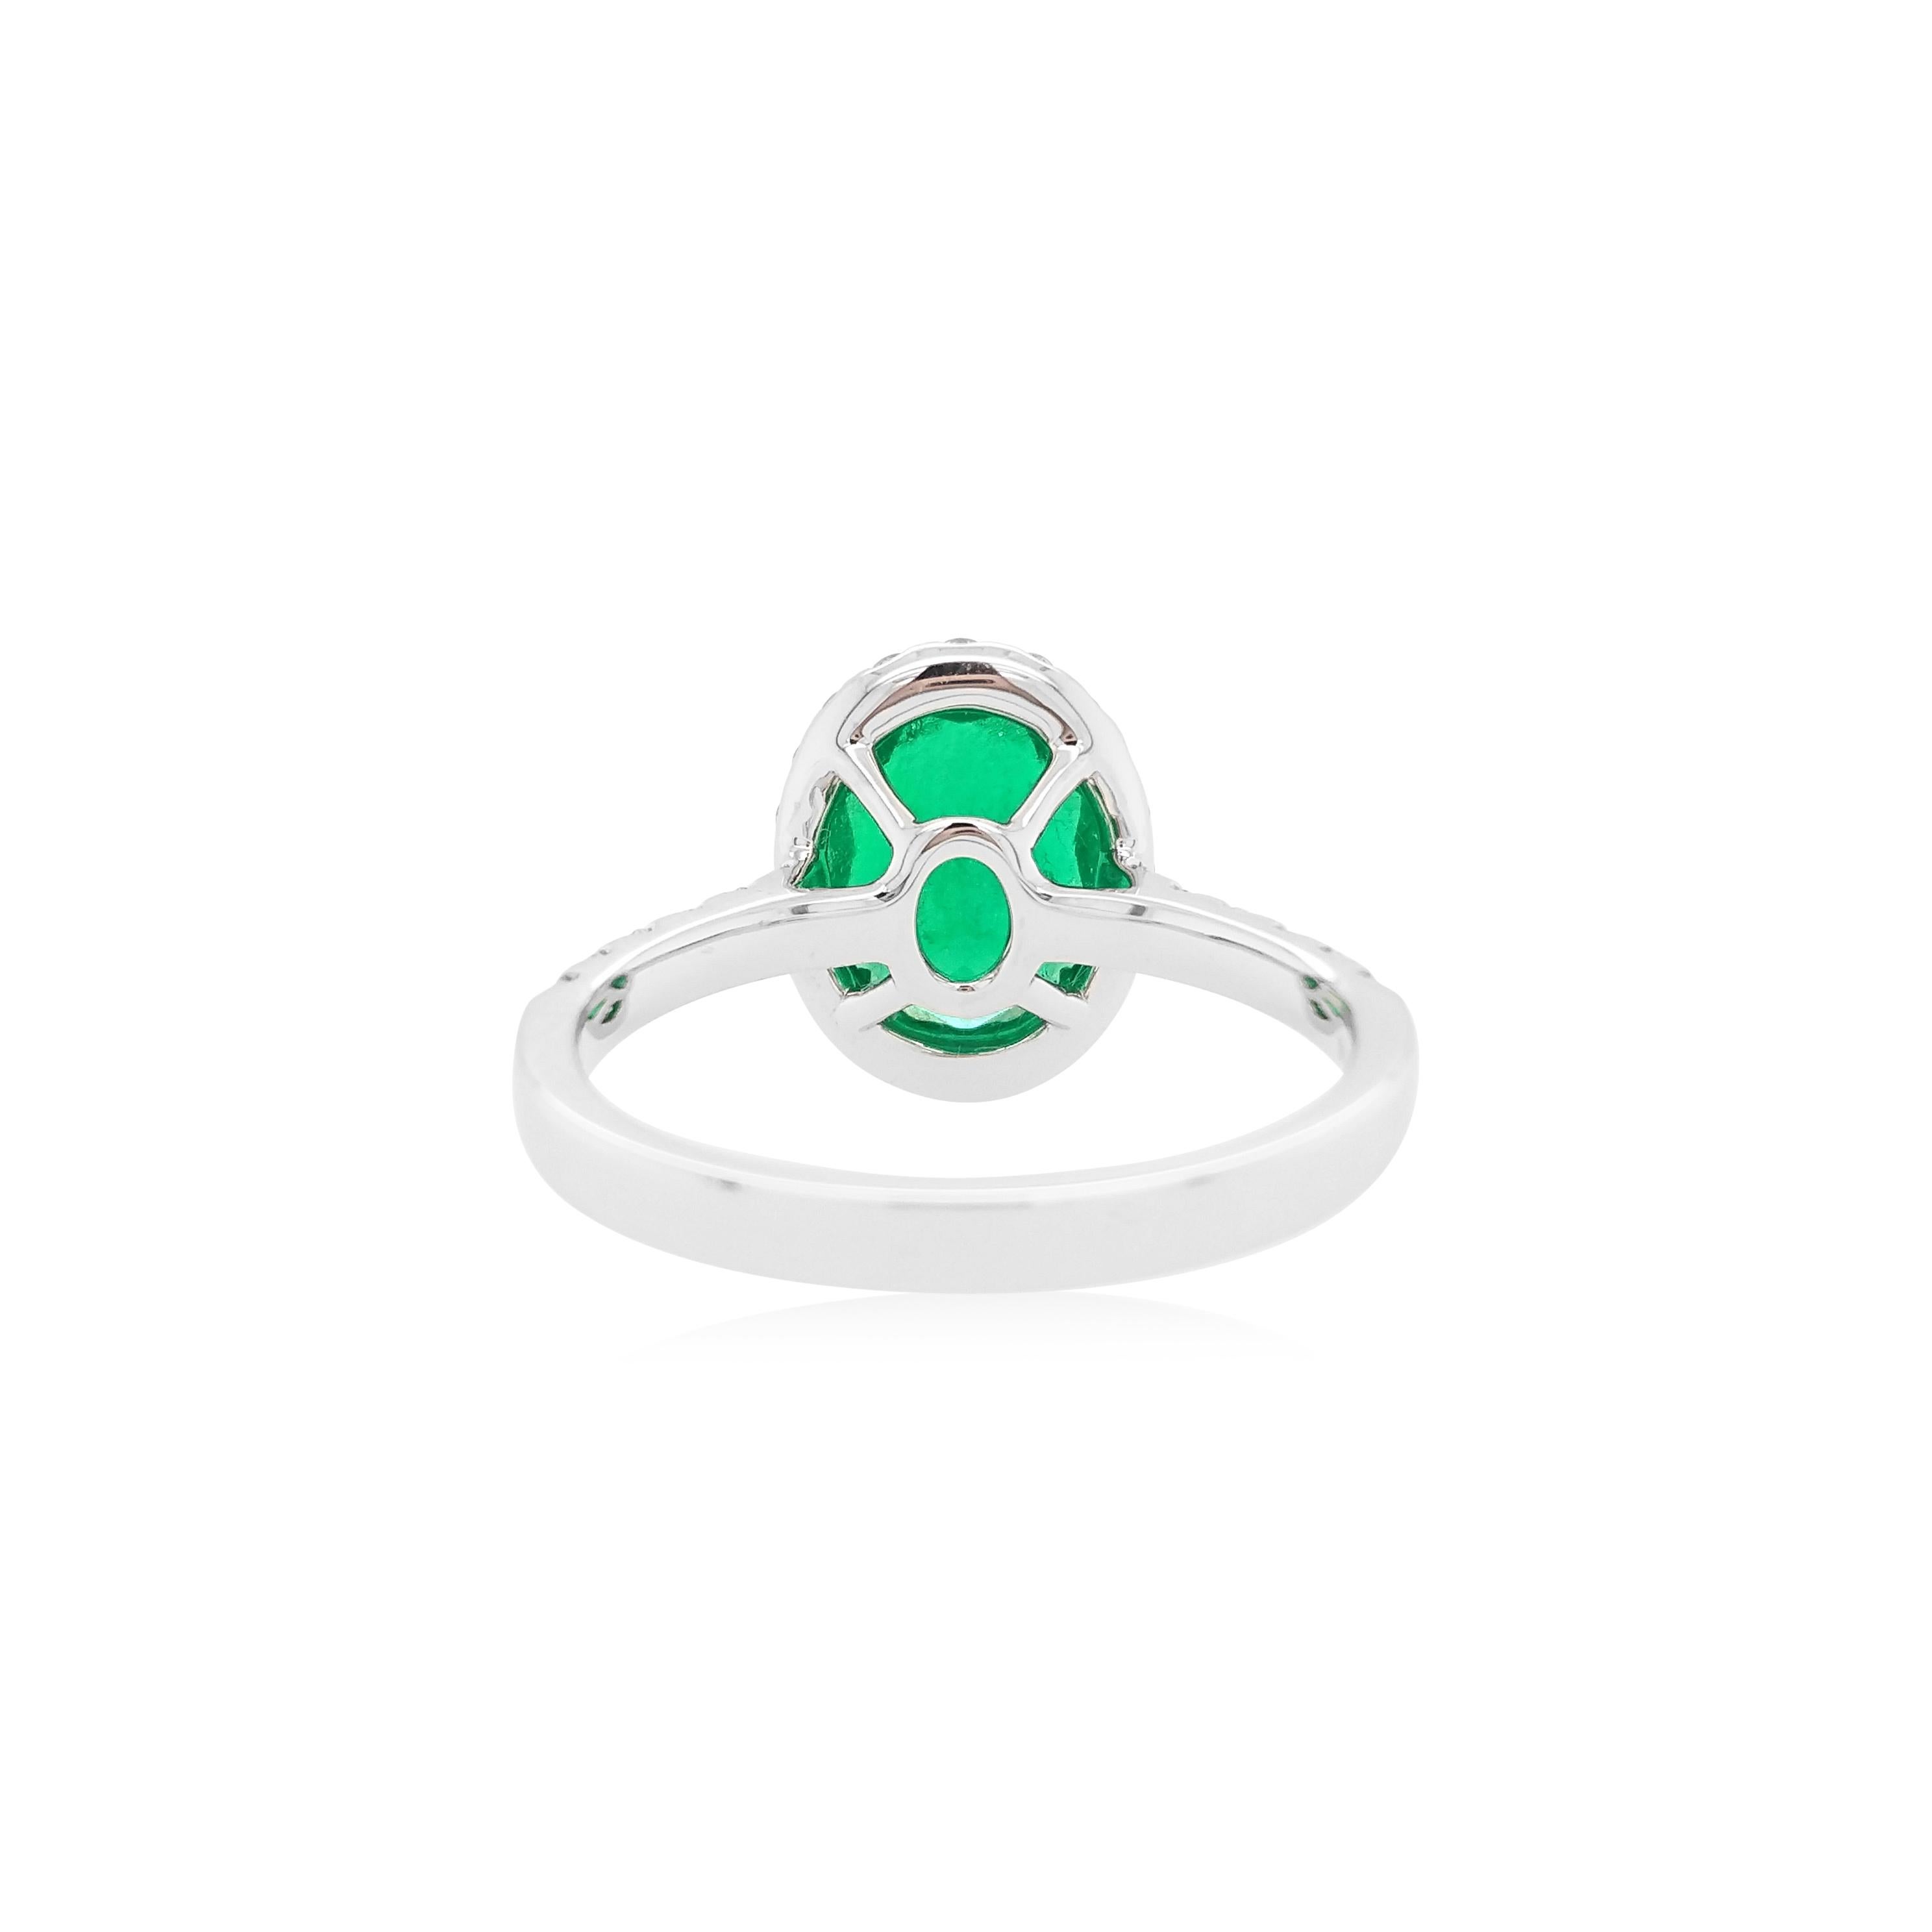 Dieser elegante Ring zeigt einen glänzenden ovalen kolumbianischen Smaragd in der Mitte, der von einem zarten weißen Diamanten umgeben ist. Dieser Ring ist in 18 Karat Weißgold gefasst, um die spektakulären Farbtöne des Smaragds und das Funkeln der